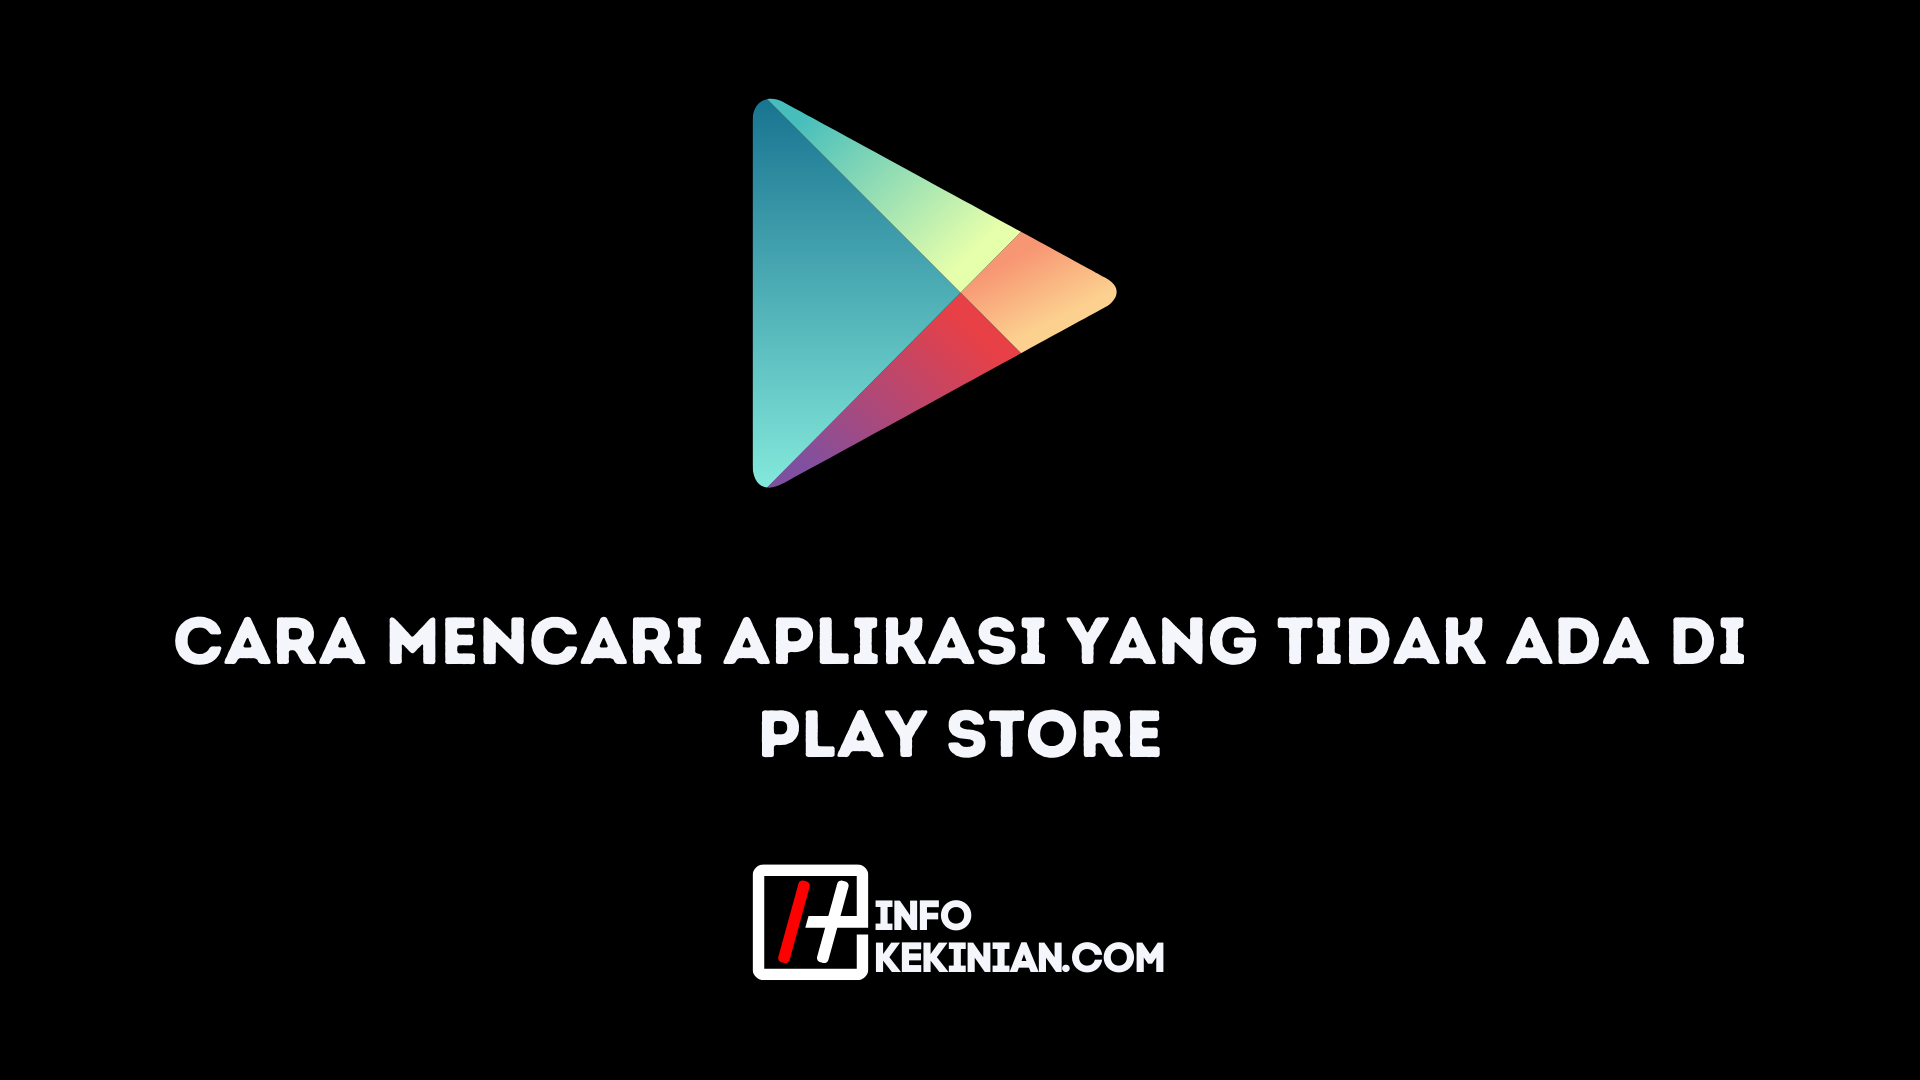 Download play store terbaru